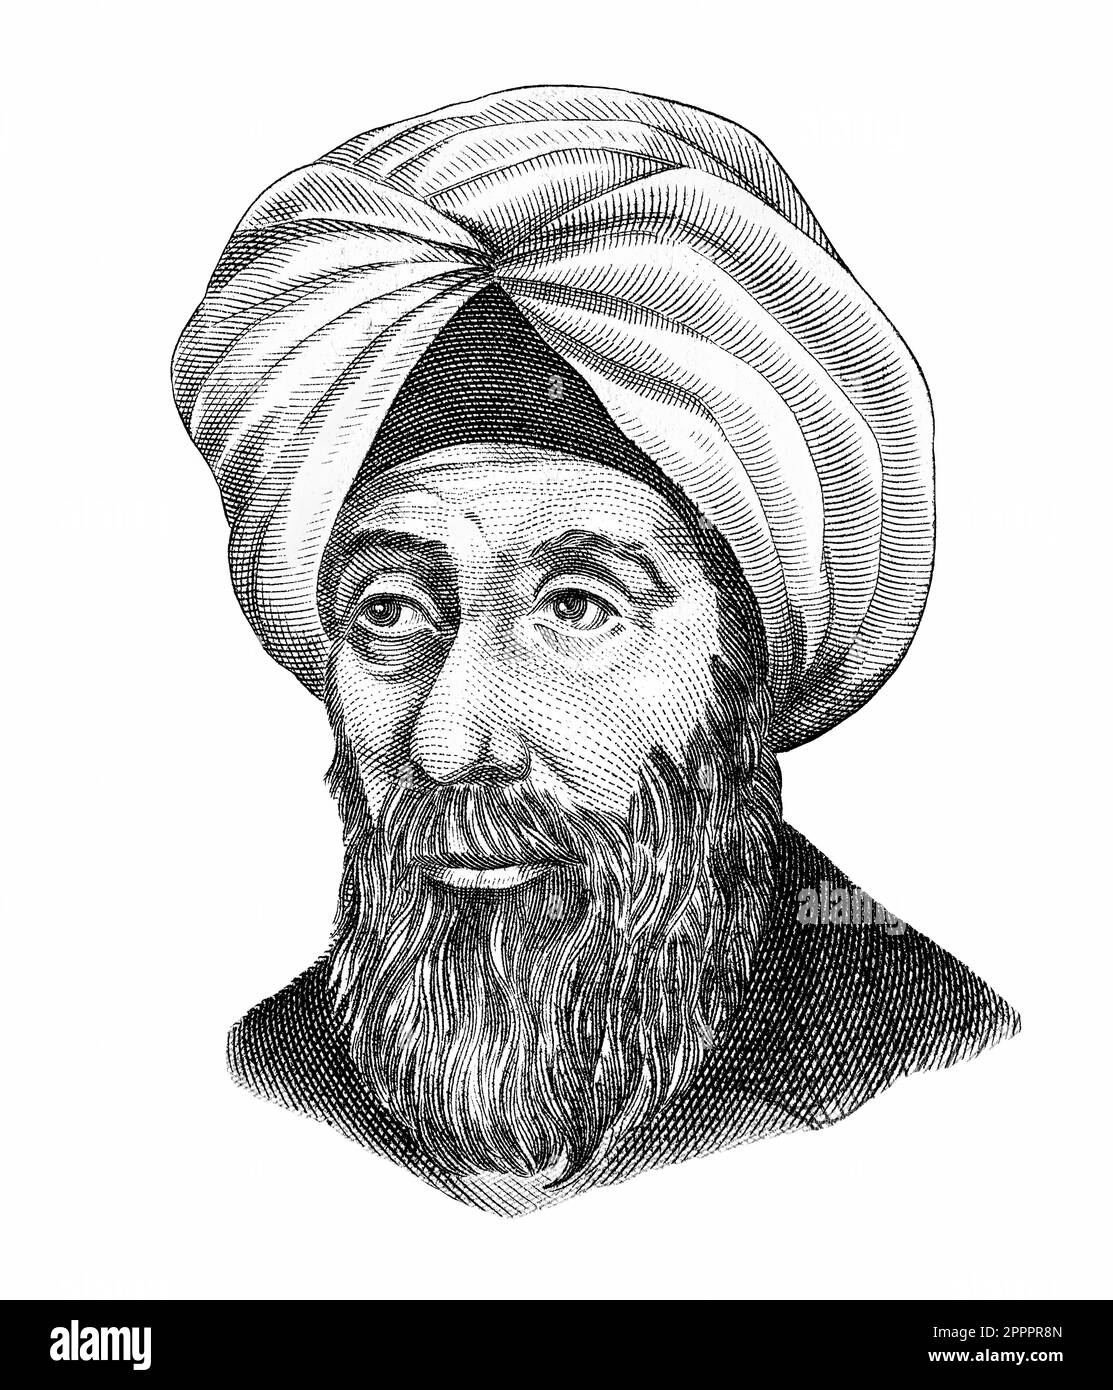 Arab scientist Alhazen (Hasan Ibn al-Haytham) (965-1040) portrait from ...